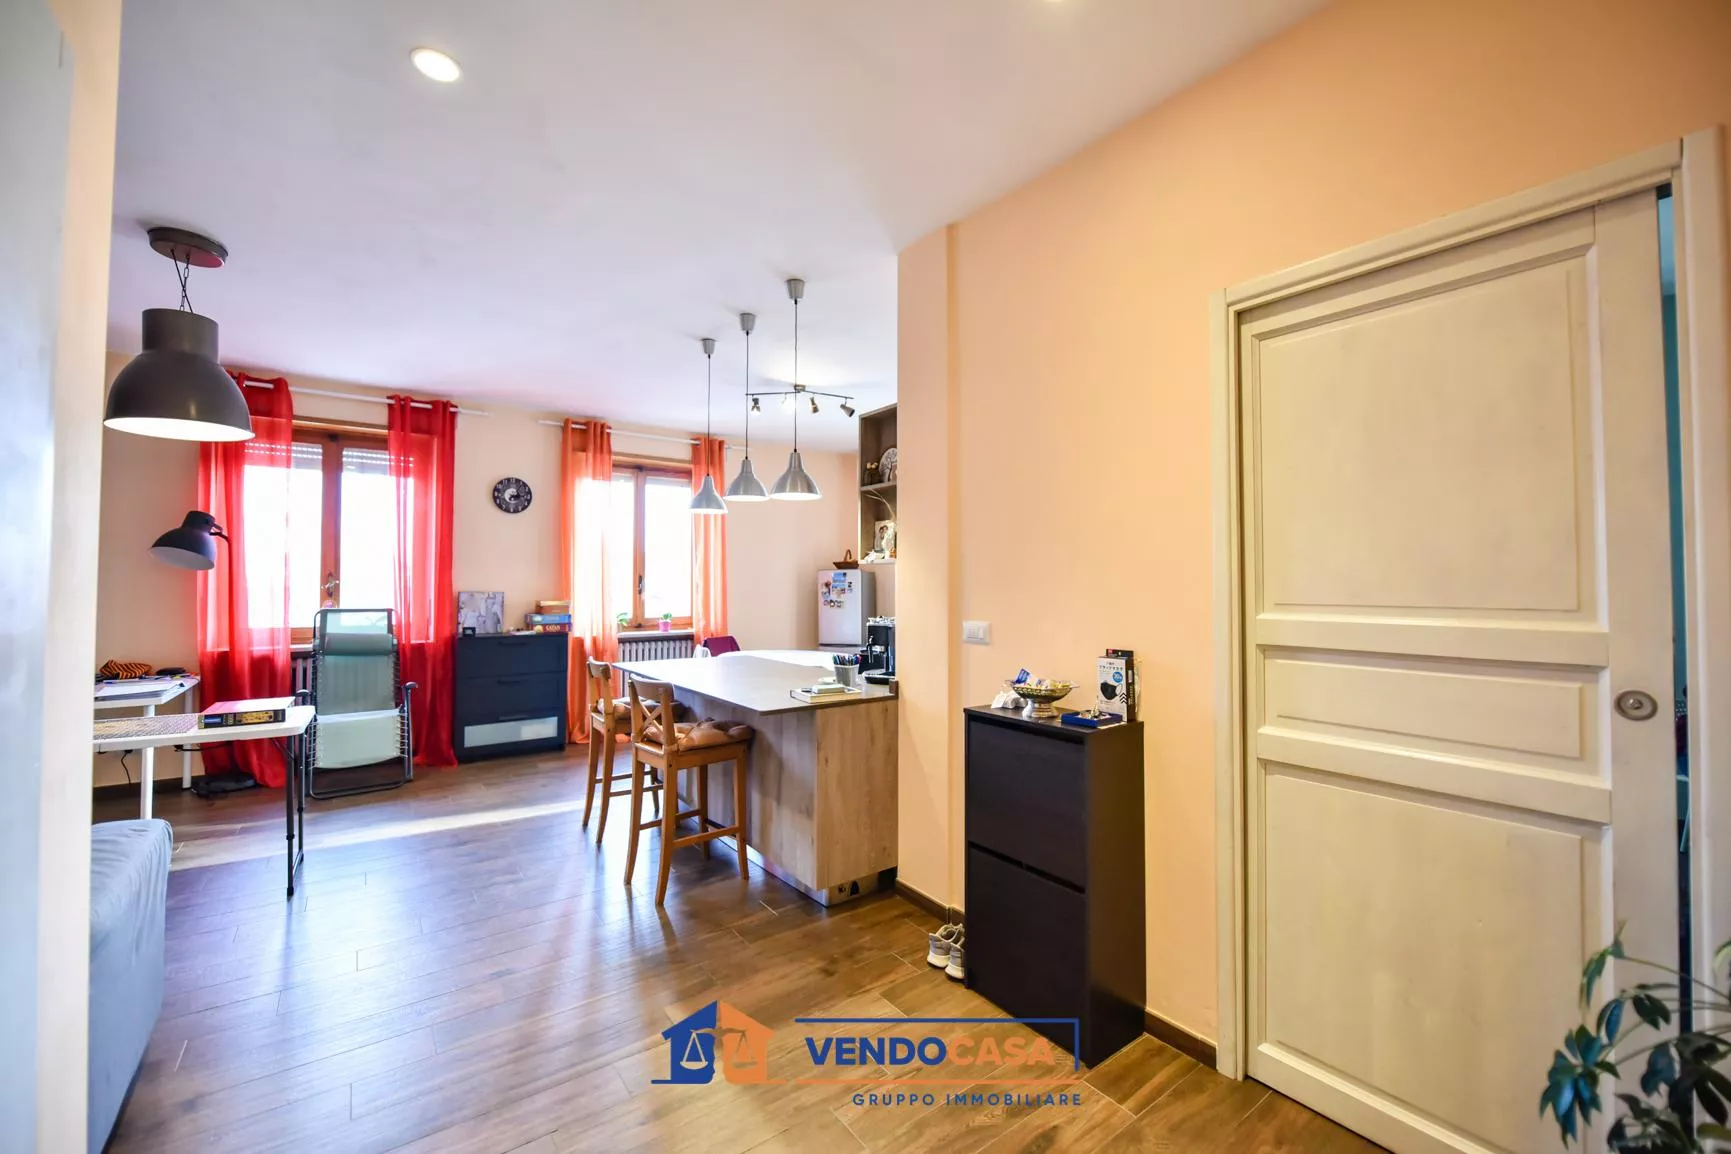 Immagine per Appartamento in vendita a Villastellone via Via Conte Cerutti 6